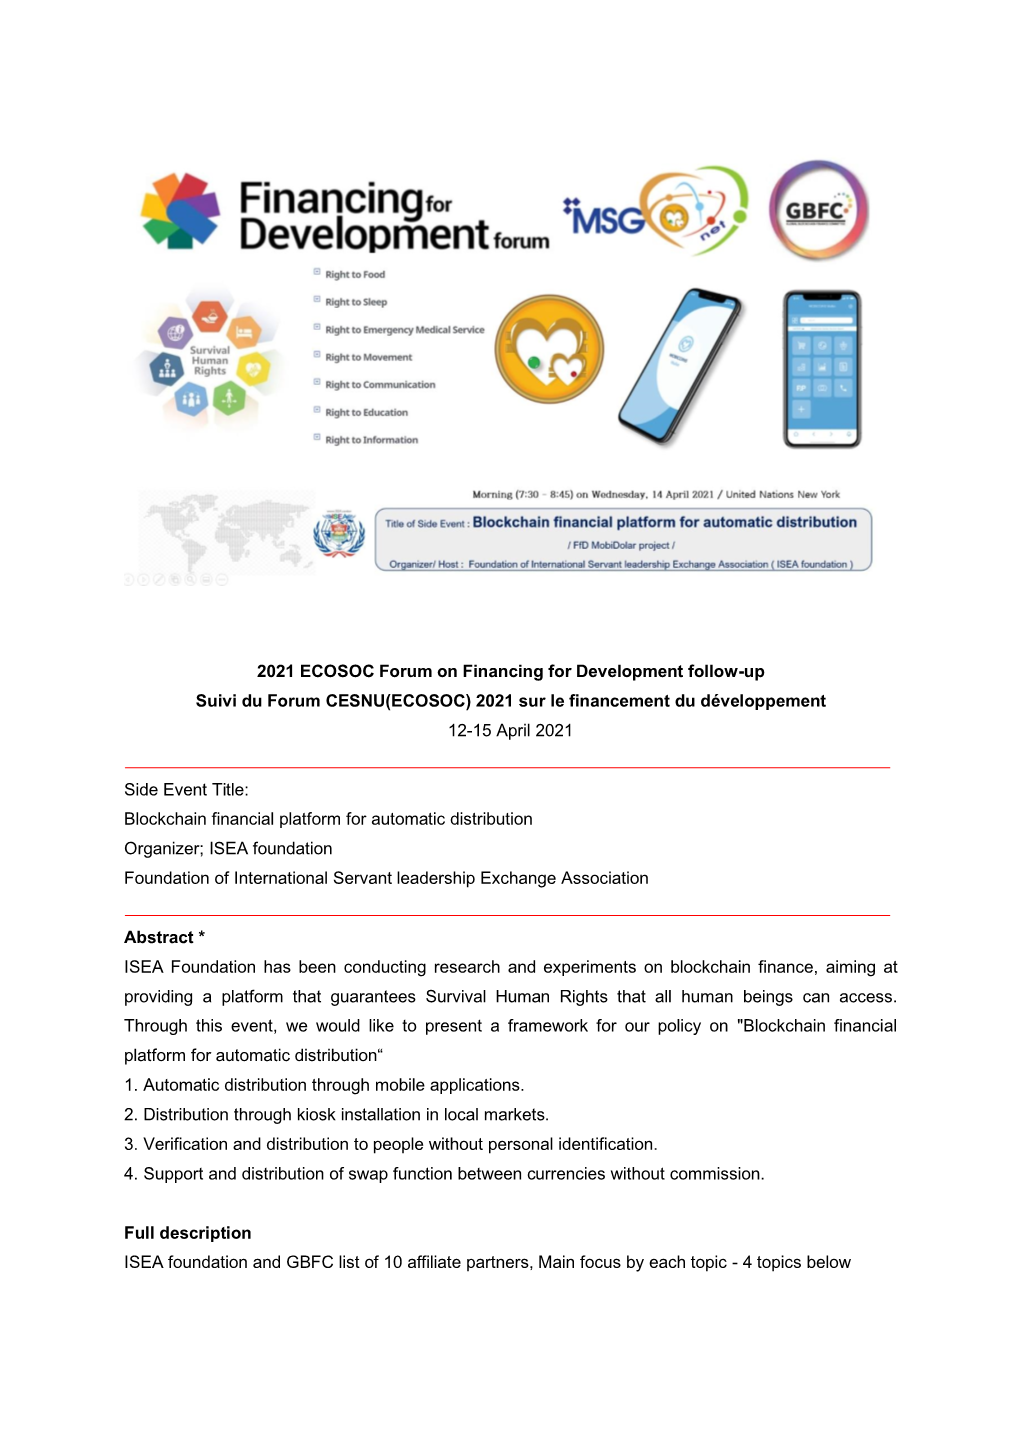 2021 ECOSOC Forum on Financing for Development Follow-Up Suivi Du Forum CESNU(ECOSOC) 2021 Sur Le Financement Du Développement 12-15 April 2021